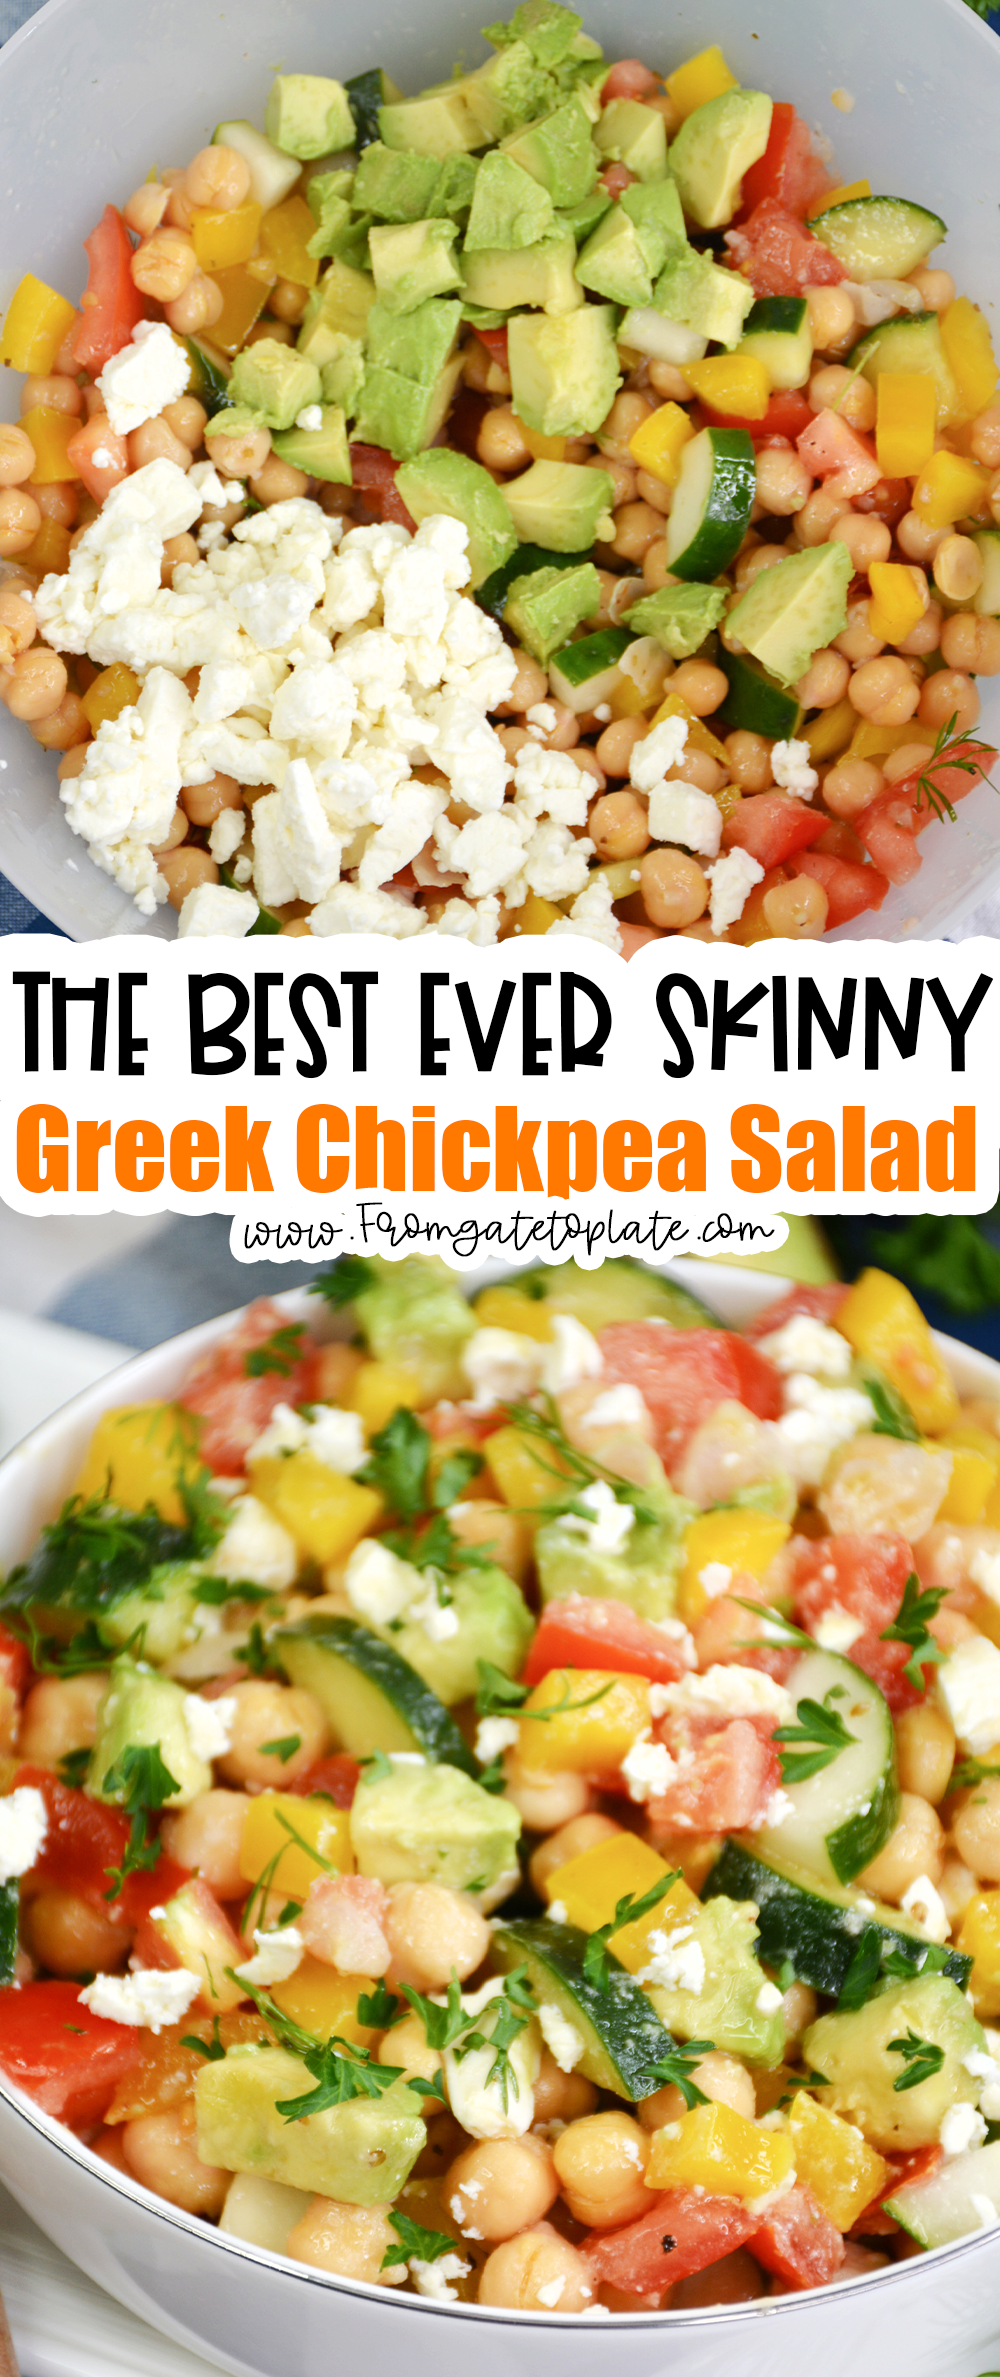 Skinny Greek Chickpea Salad